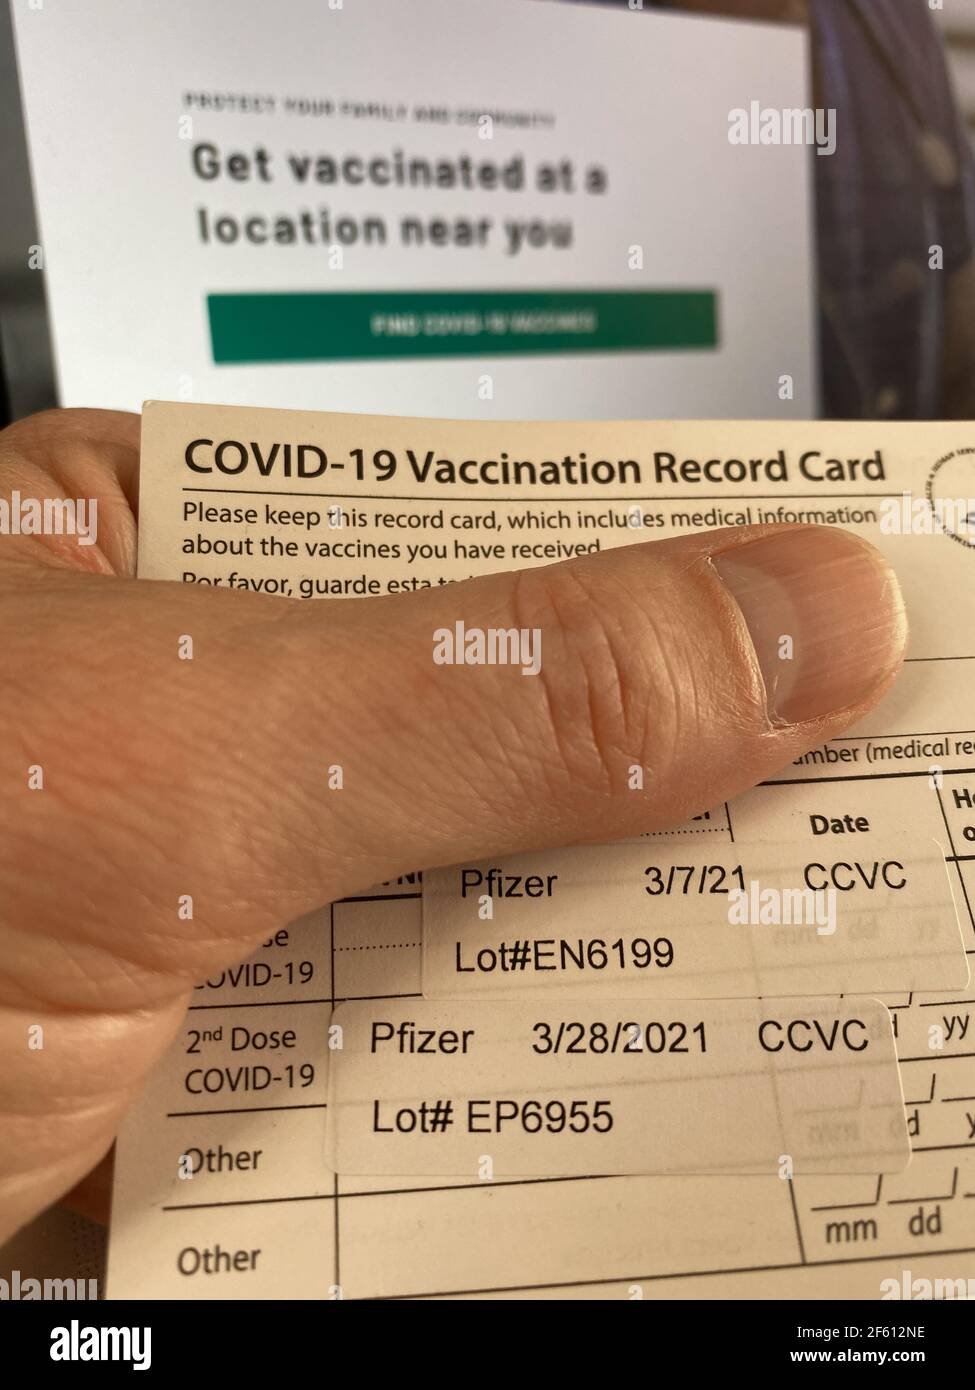 Philadelphia, PA, 29 marzo 2021, USA - CDC COVID-29 la scheda di registrazione della vaccinazione che mostra il destinatario ha ricevuto 2 colpi del vaccino Pfizer Credit: Don Mennig/Alamy Live News Foto Stock